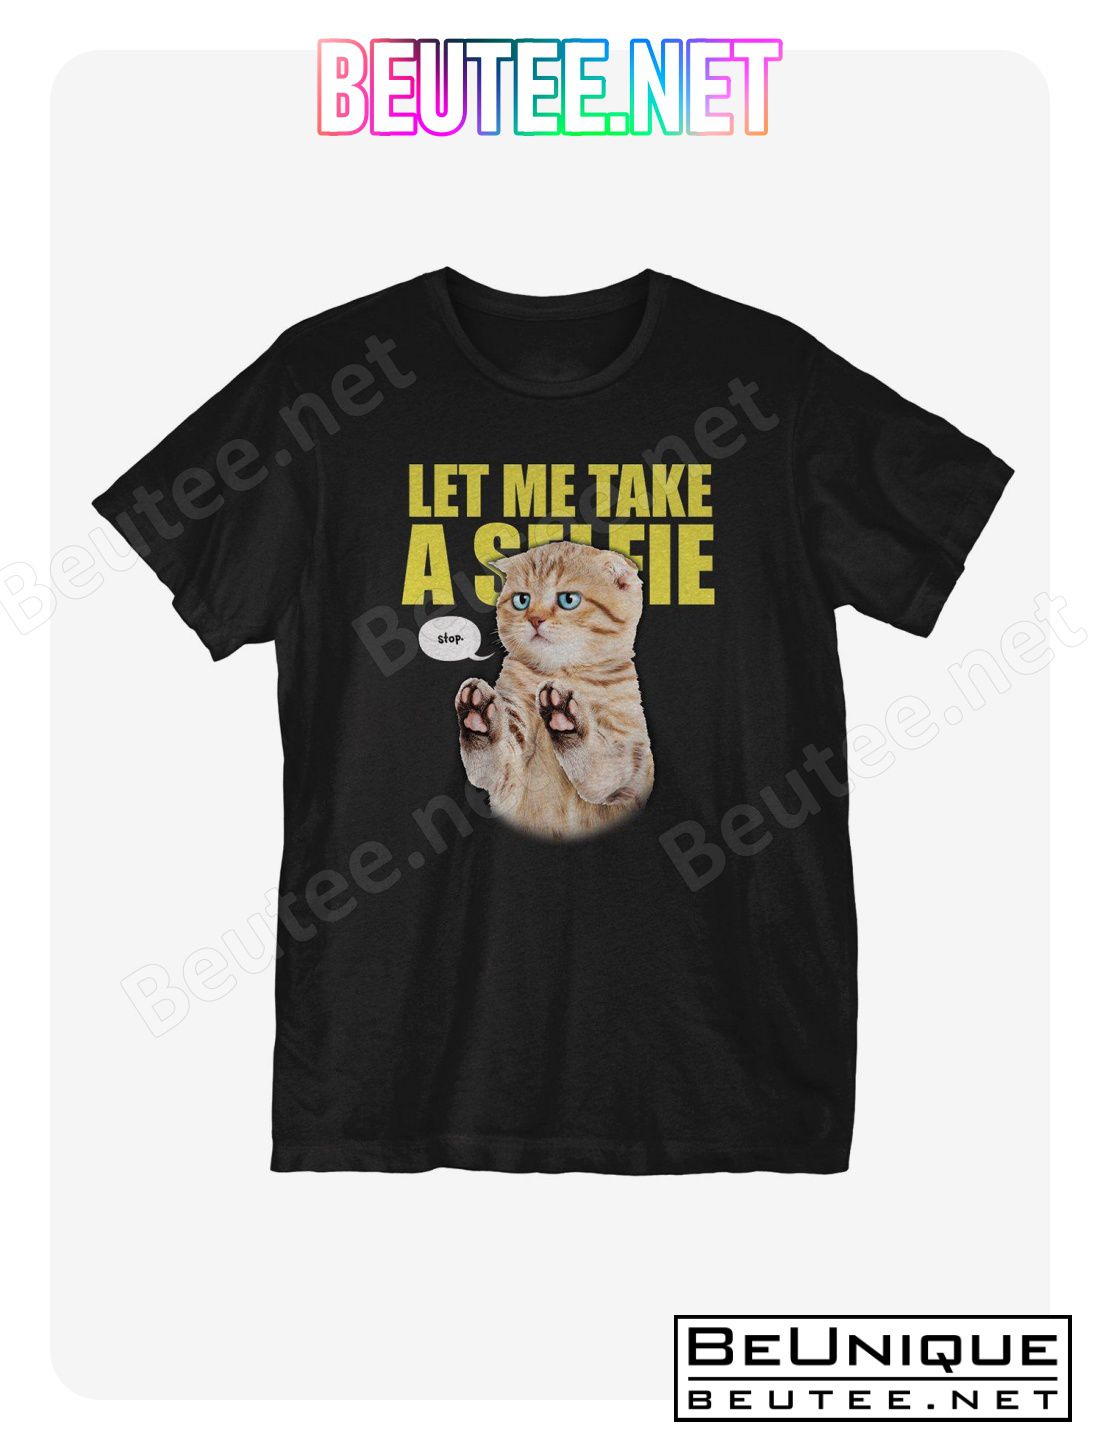 Let Me Take a T-Shirt